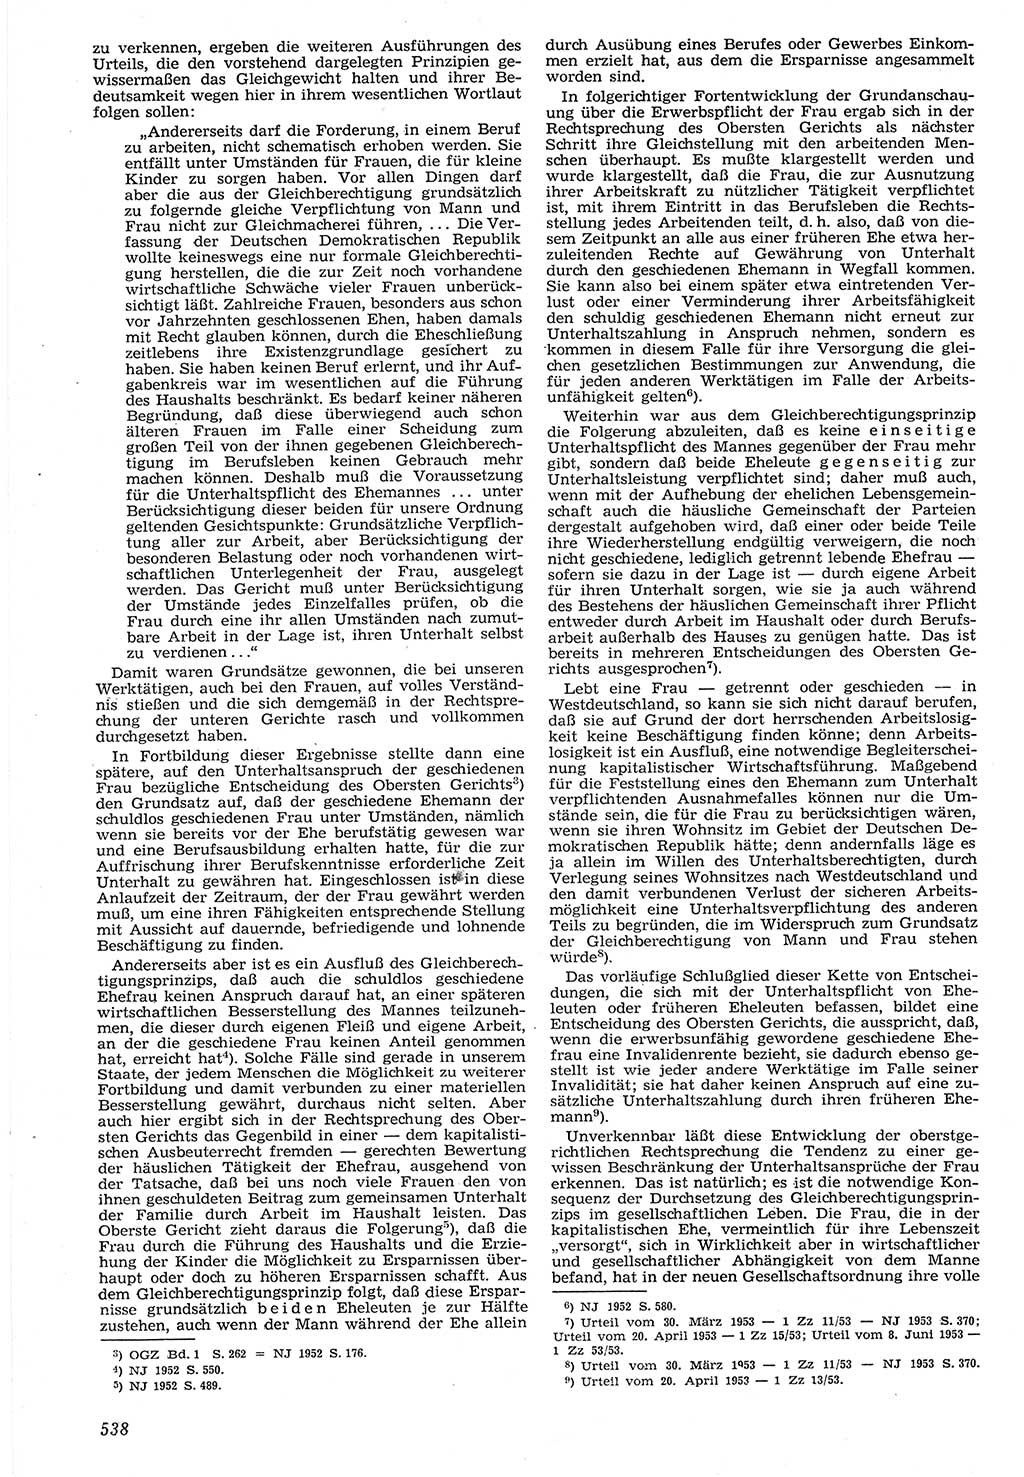 Neue Justiz (NJ), Zeitschrift für Recht und Rechtswissenschaft [Deutsche Demokratische Republik (DDR)], 7. Jahrgang 1953, Seite 538 (NJ DDR 1953, S. 538)